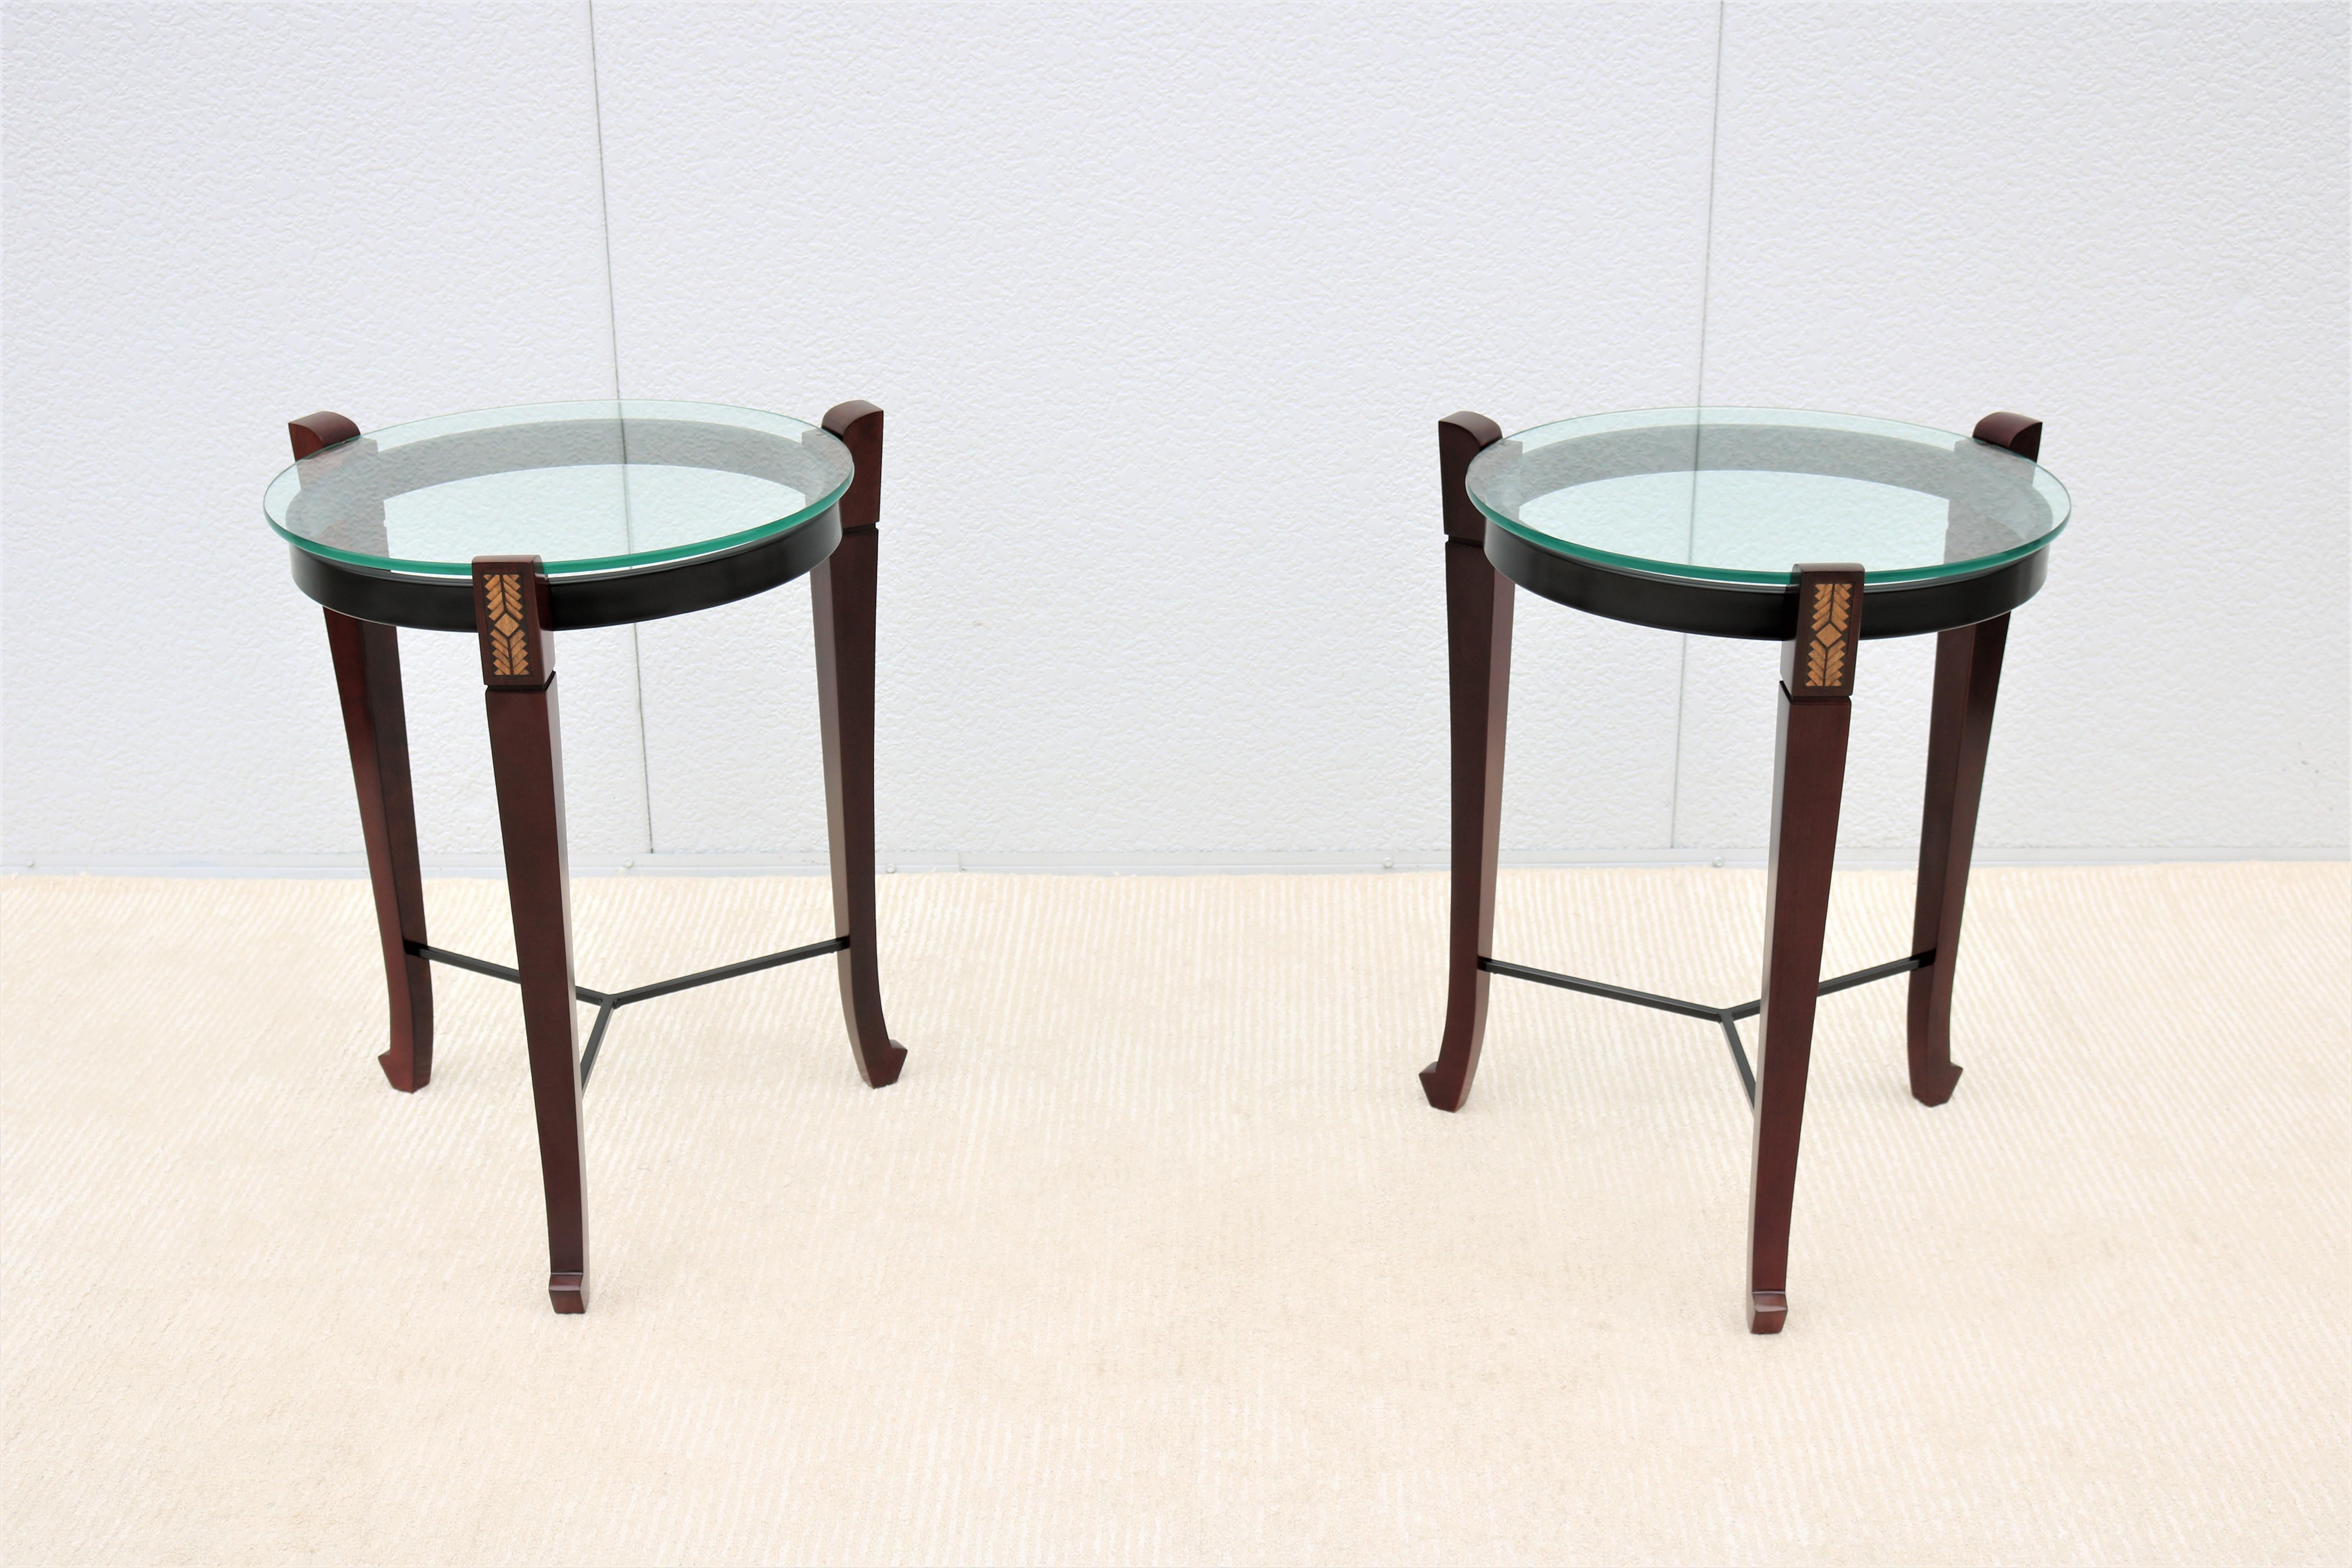 Fabelhaftes Paar runder Beistelltische im Vintage-Stil, inspiriert vom Design des 18. und 19. Jahrhunderts.
Diese prächtigen Tische verbinden den gewünschten Luxus mit der erforderlichen Funktionalität.
Der Sockel aus Holz und Metall unterstreicht